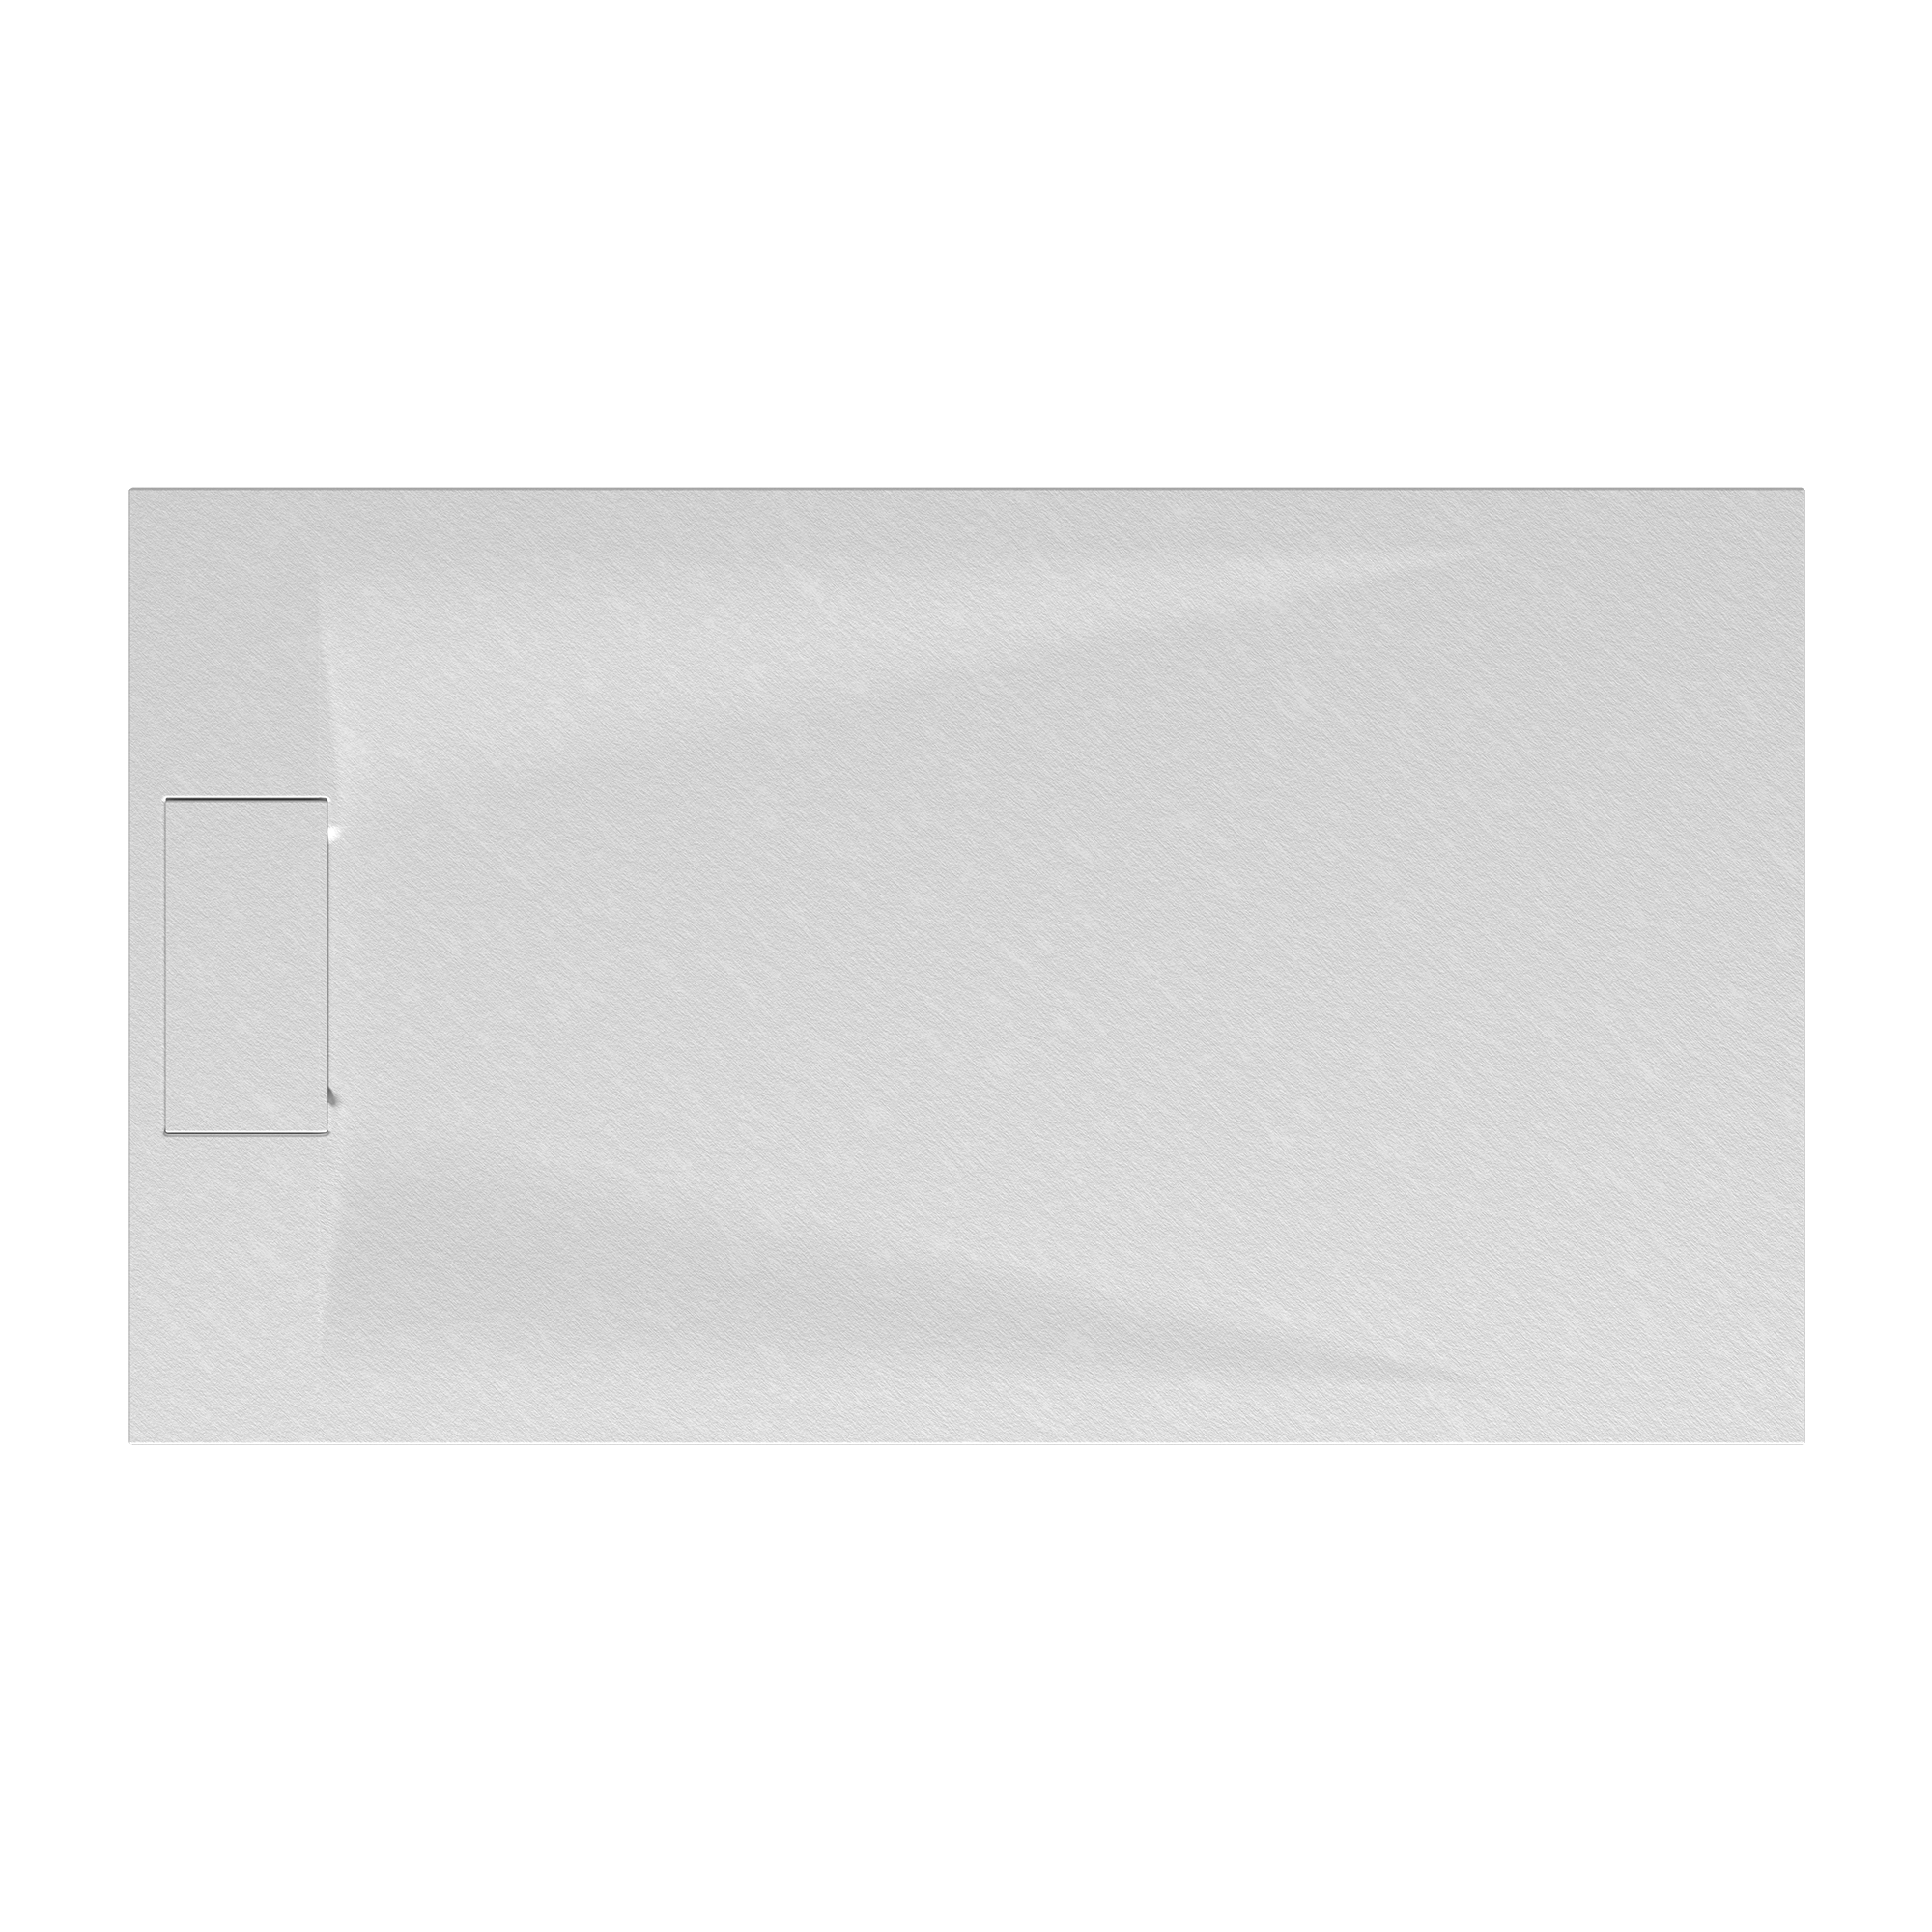 Duschwanne 'Lite Line/Quick72' Steinoptik weiß 90 x 160 cm + product picture